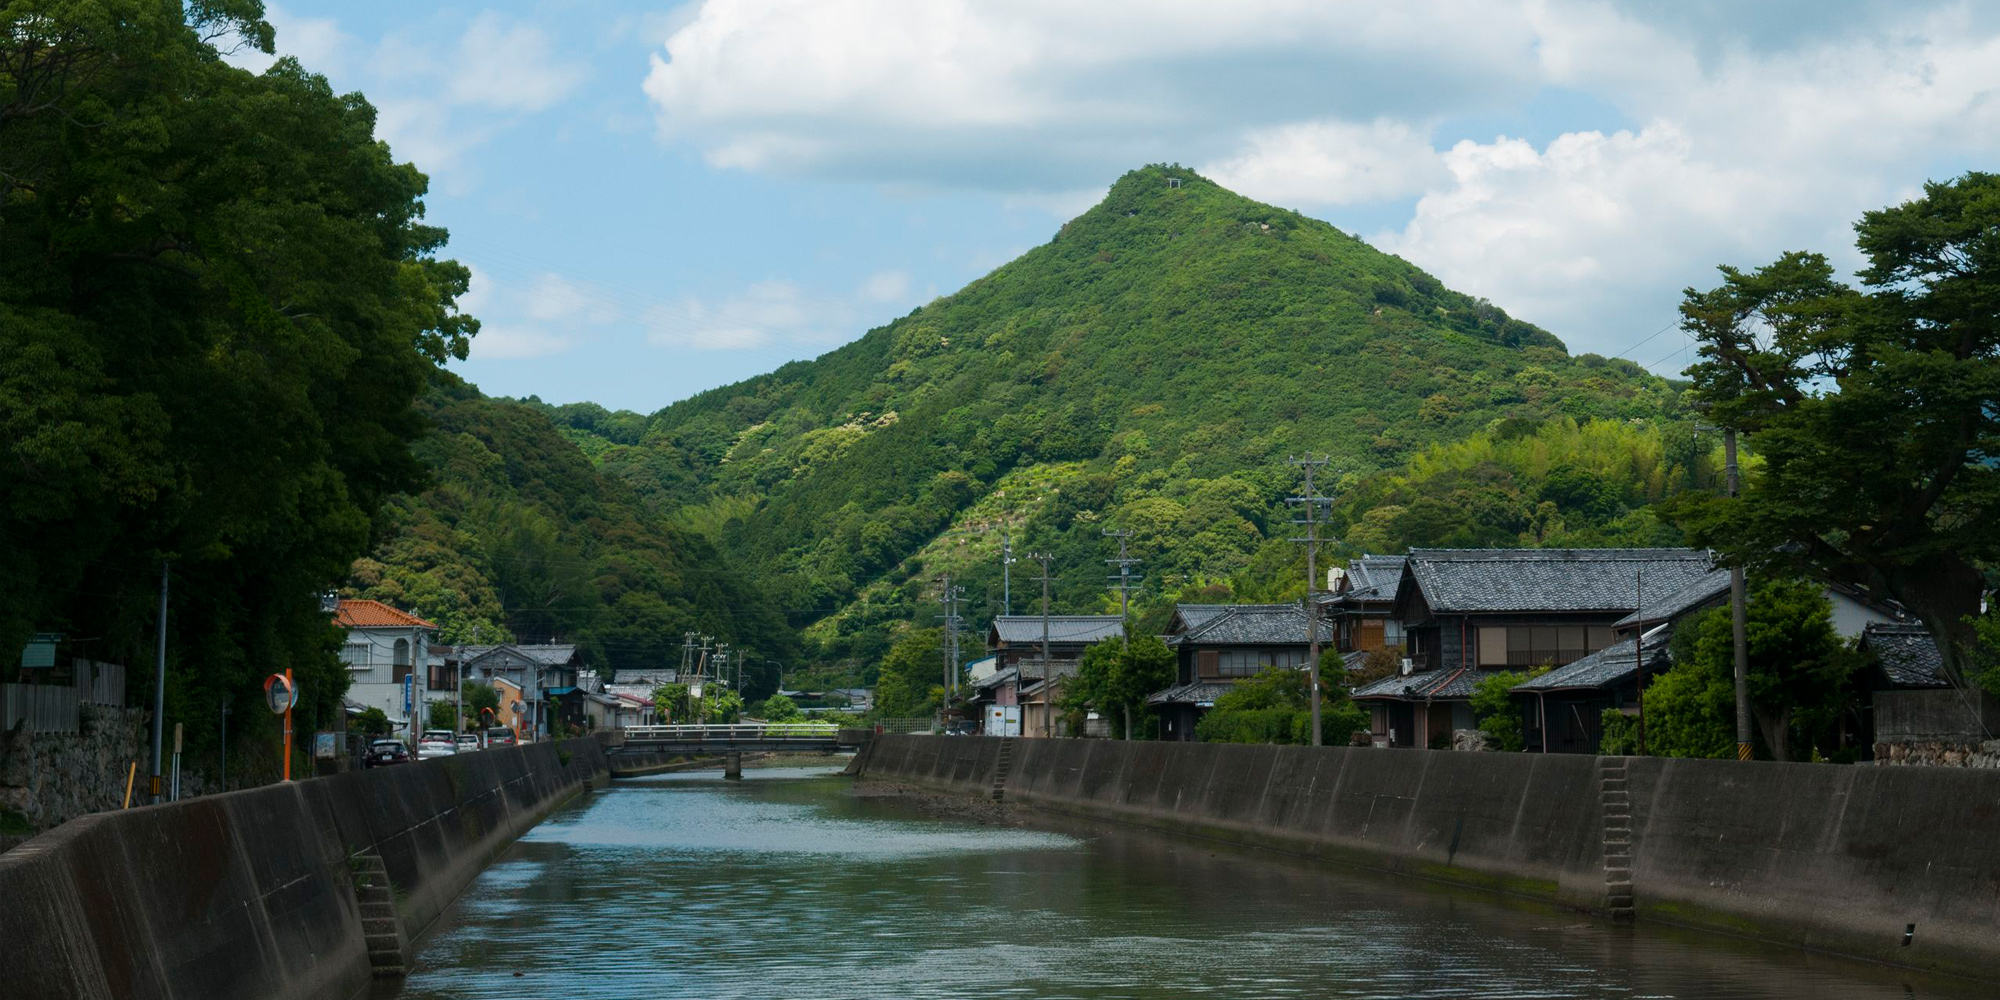 五ヶ所浦 浅間山を望む風景写真